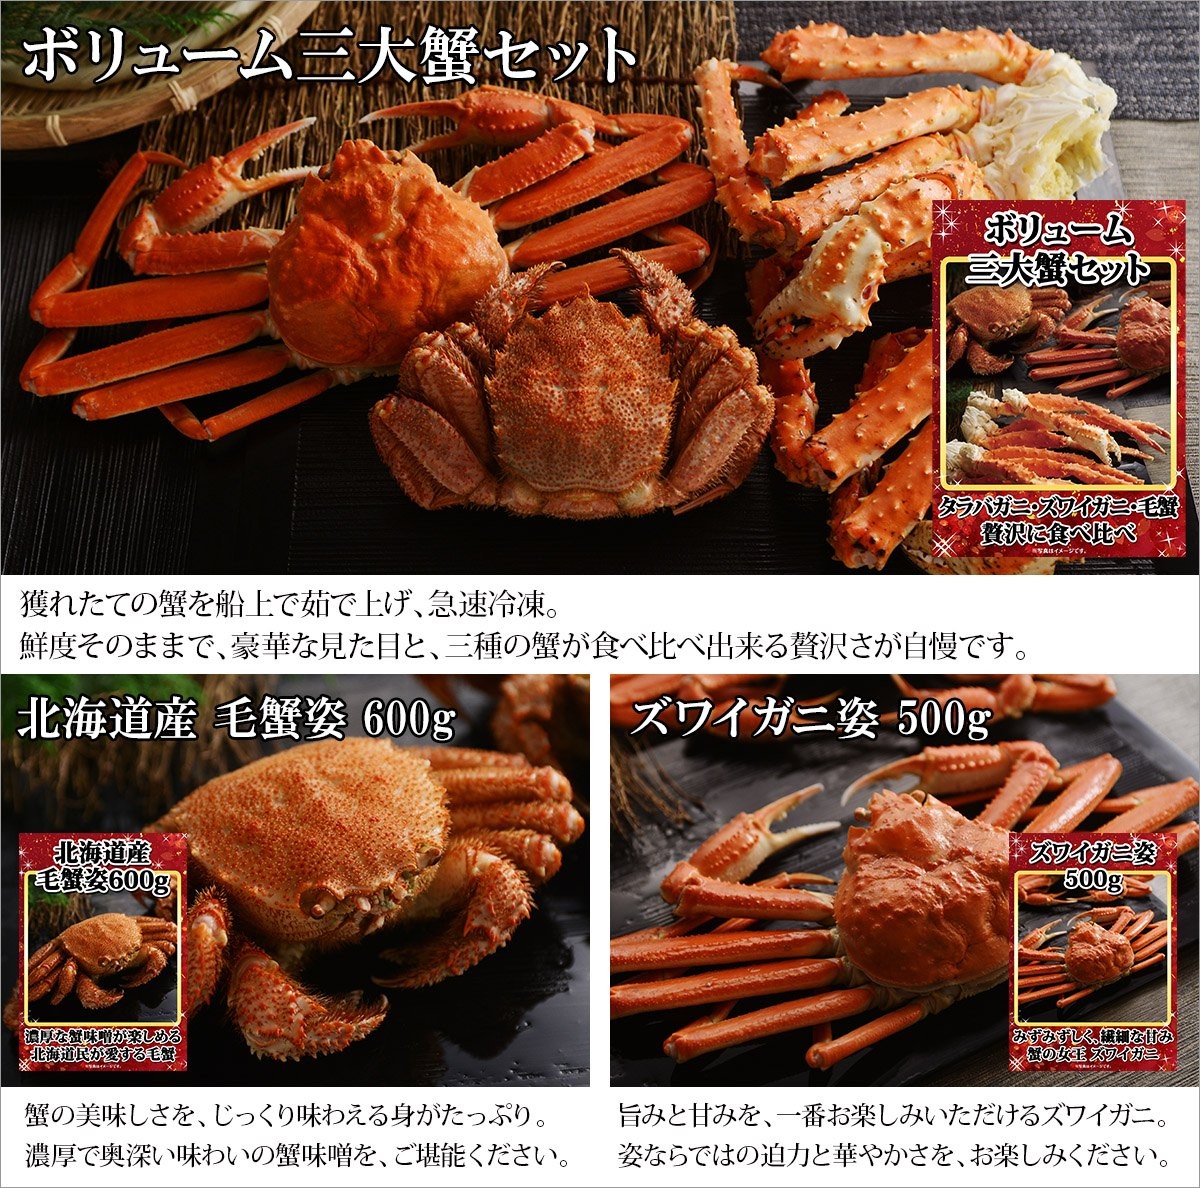 イベントの豪華景品に是非 北海道の三大蟹が当たる特大パネル3点付